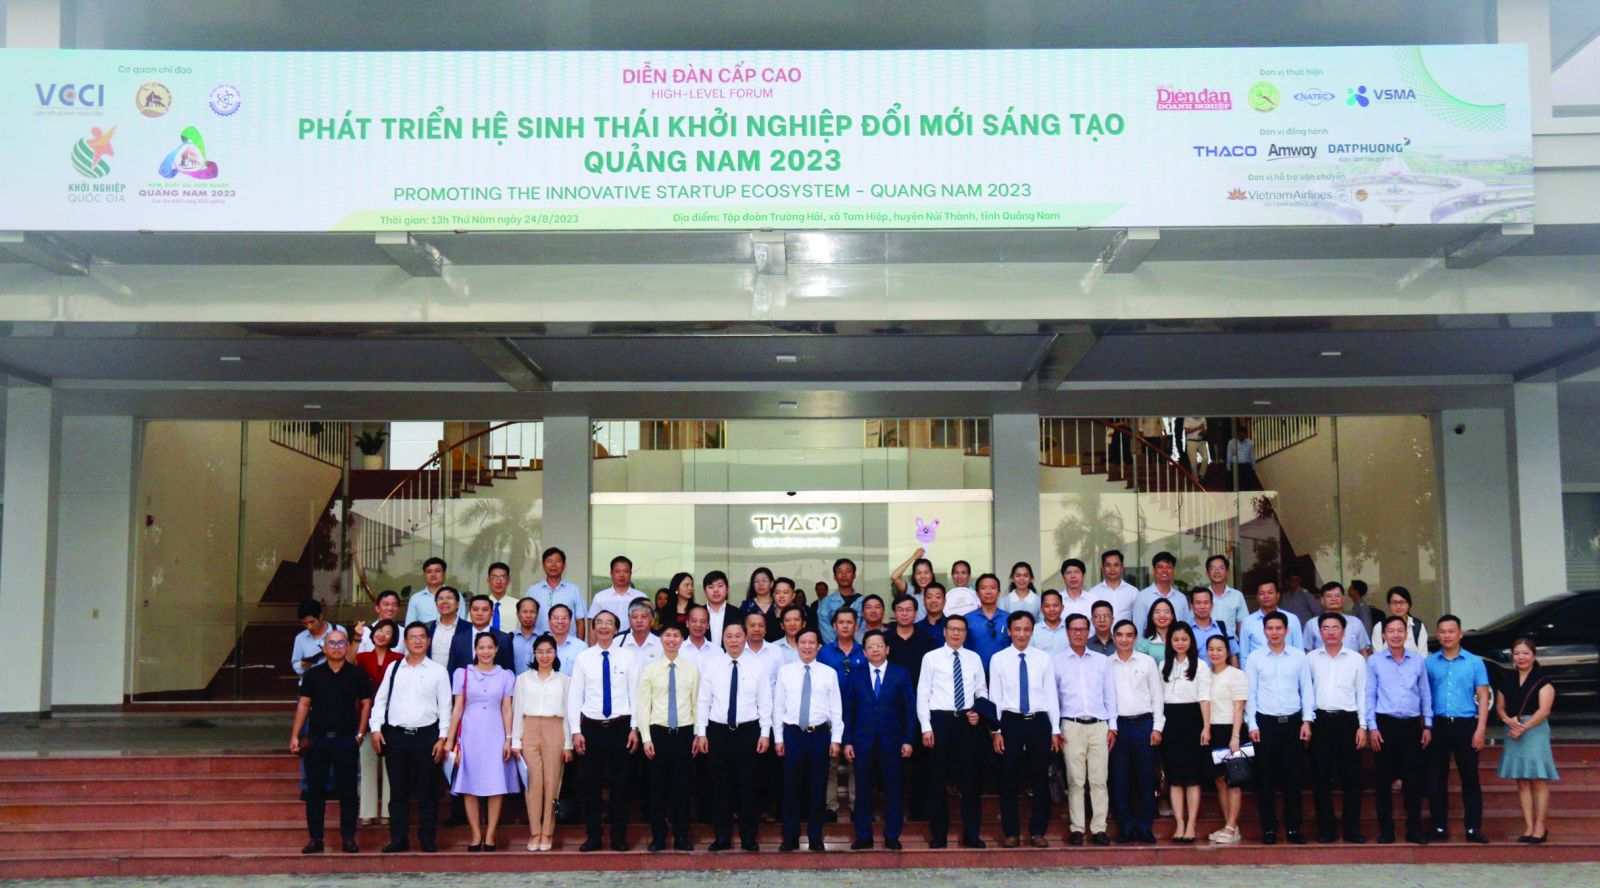 Lãnh đạo VCCI cùng các khách mời chụp ảnh lưu niệm tại Văn phòng THACO nhân dịp tổ chức Diễn đàn cấp cao Phát triển hệ sinh thái khởi nghiệp tại Quảng Nam, tháng 8/2023.